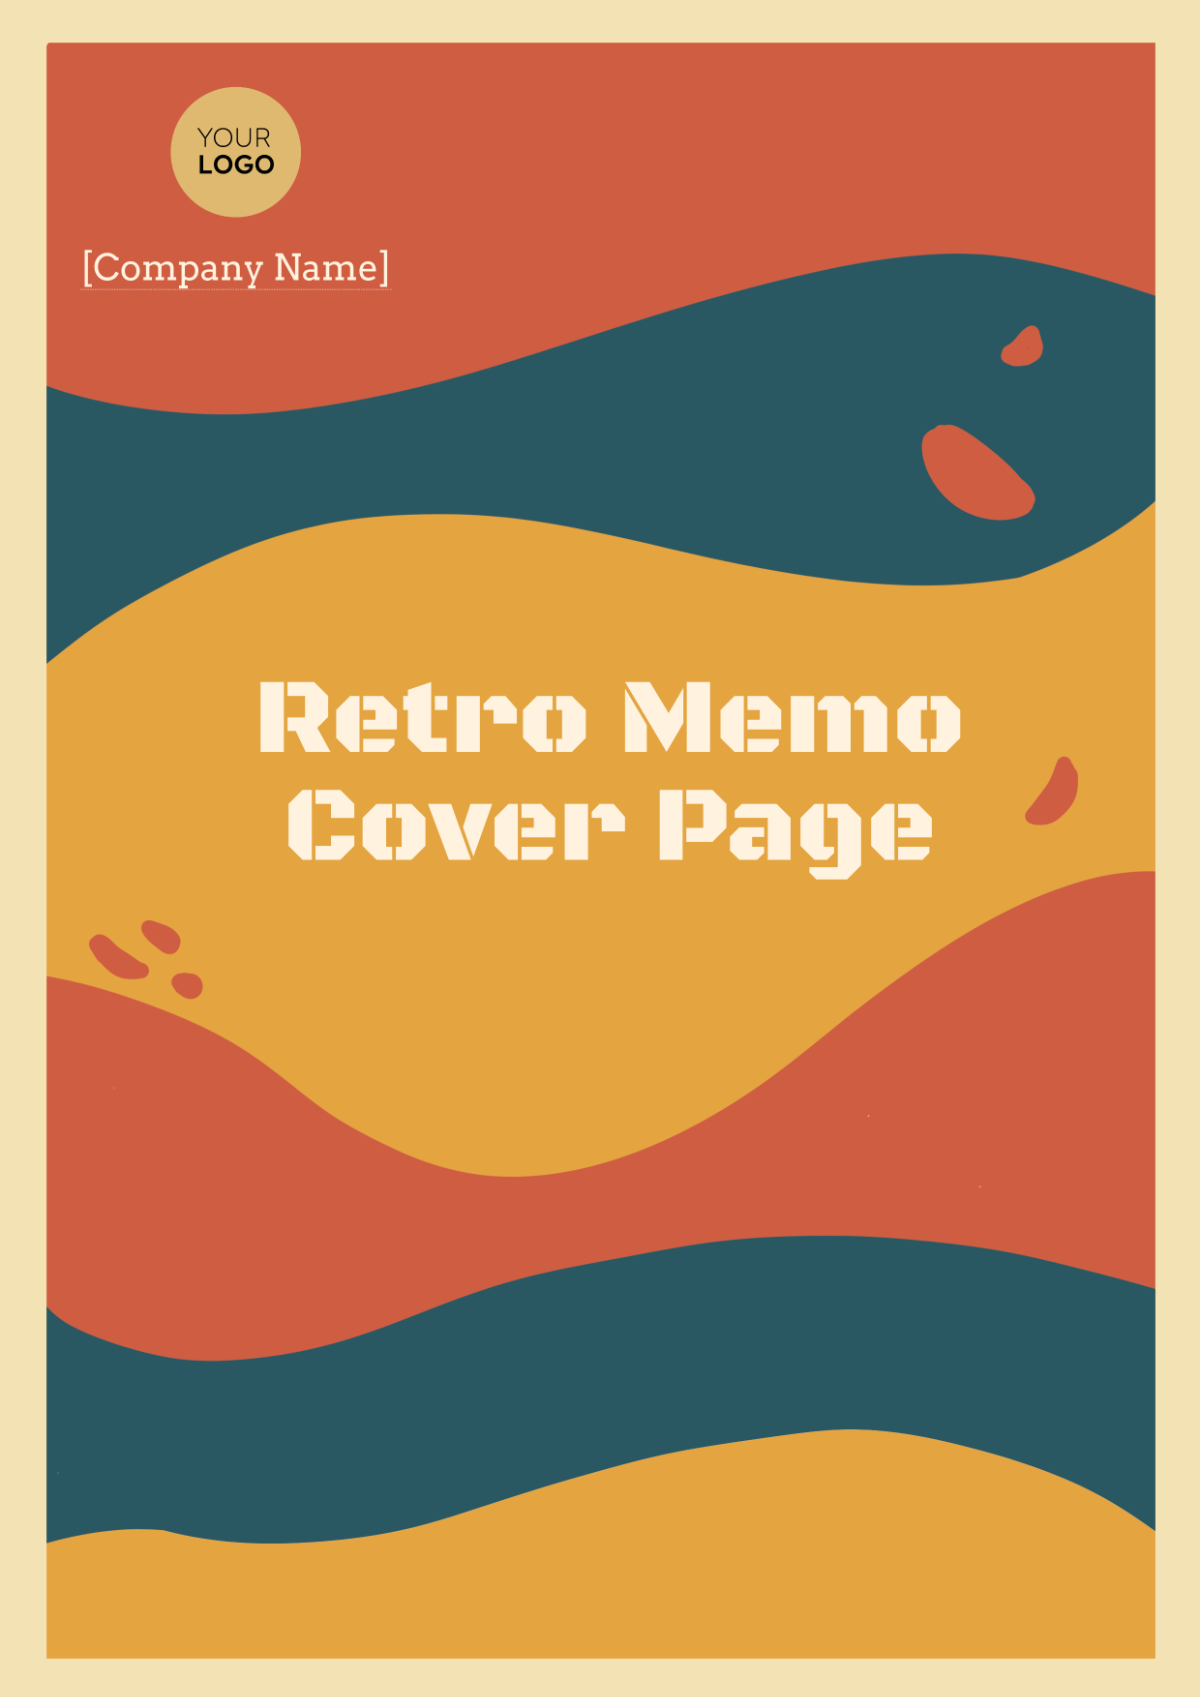 Retro Memo Cover Page Template